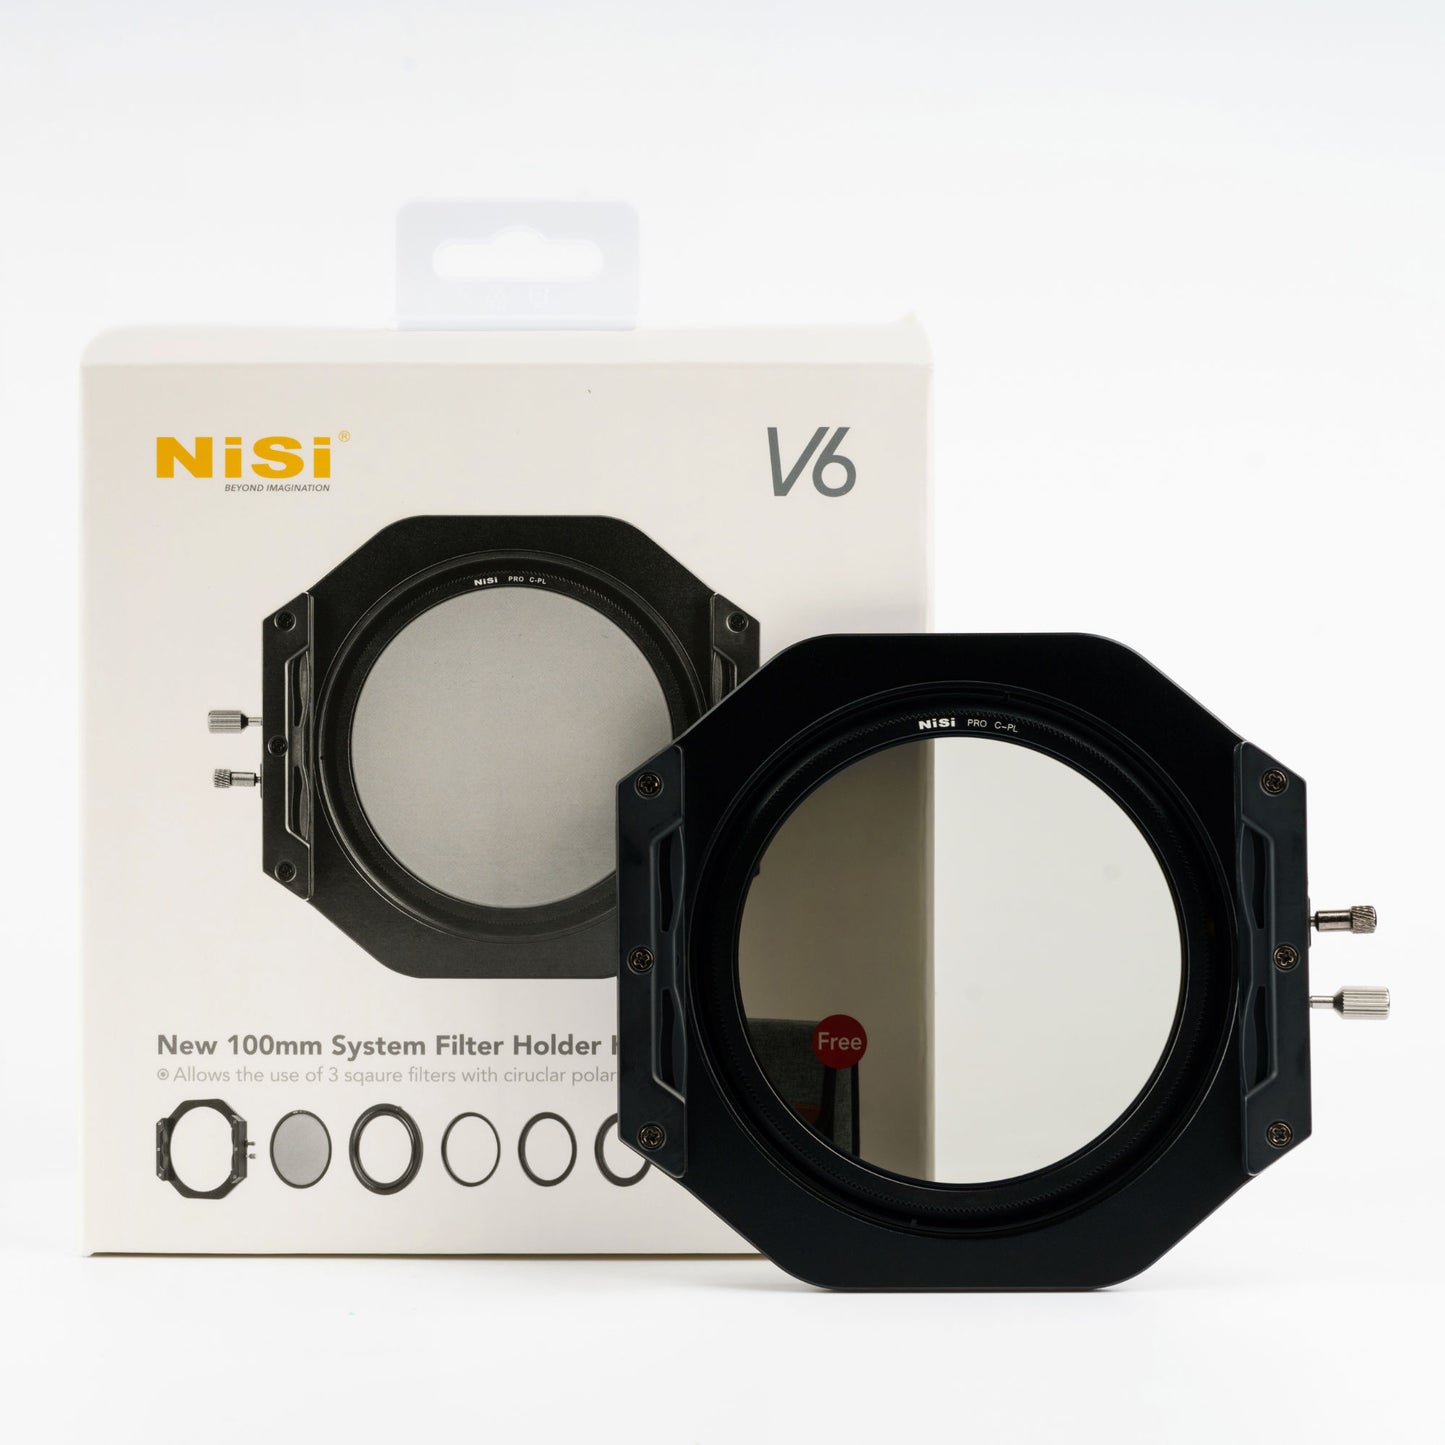 NiSi V6 100mm Filter Holder with Pro CPL